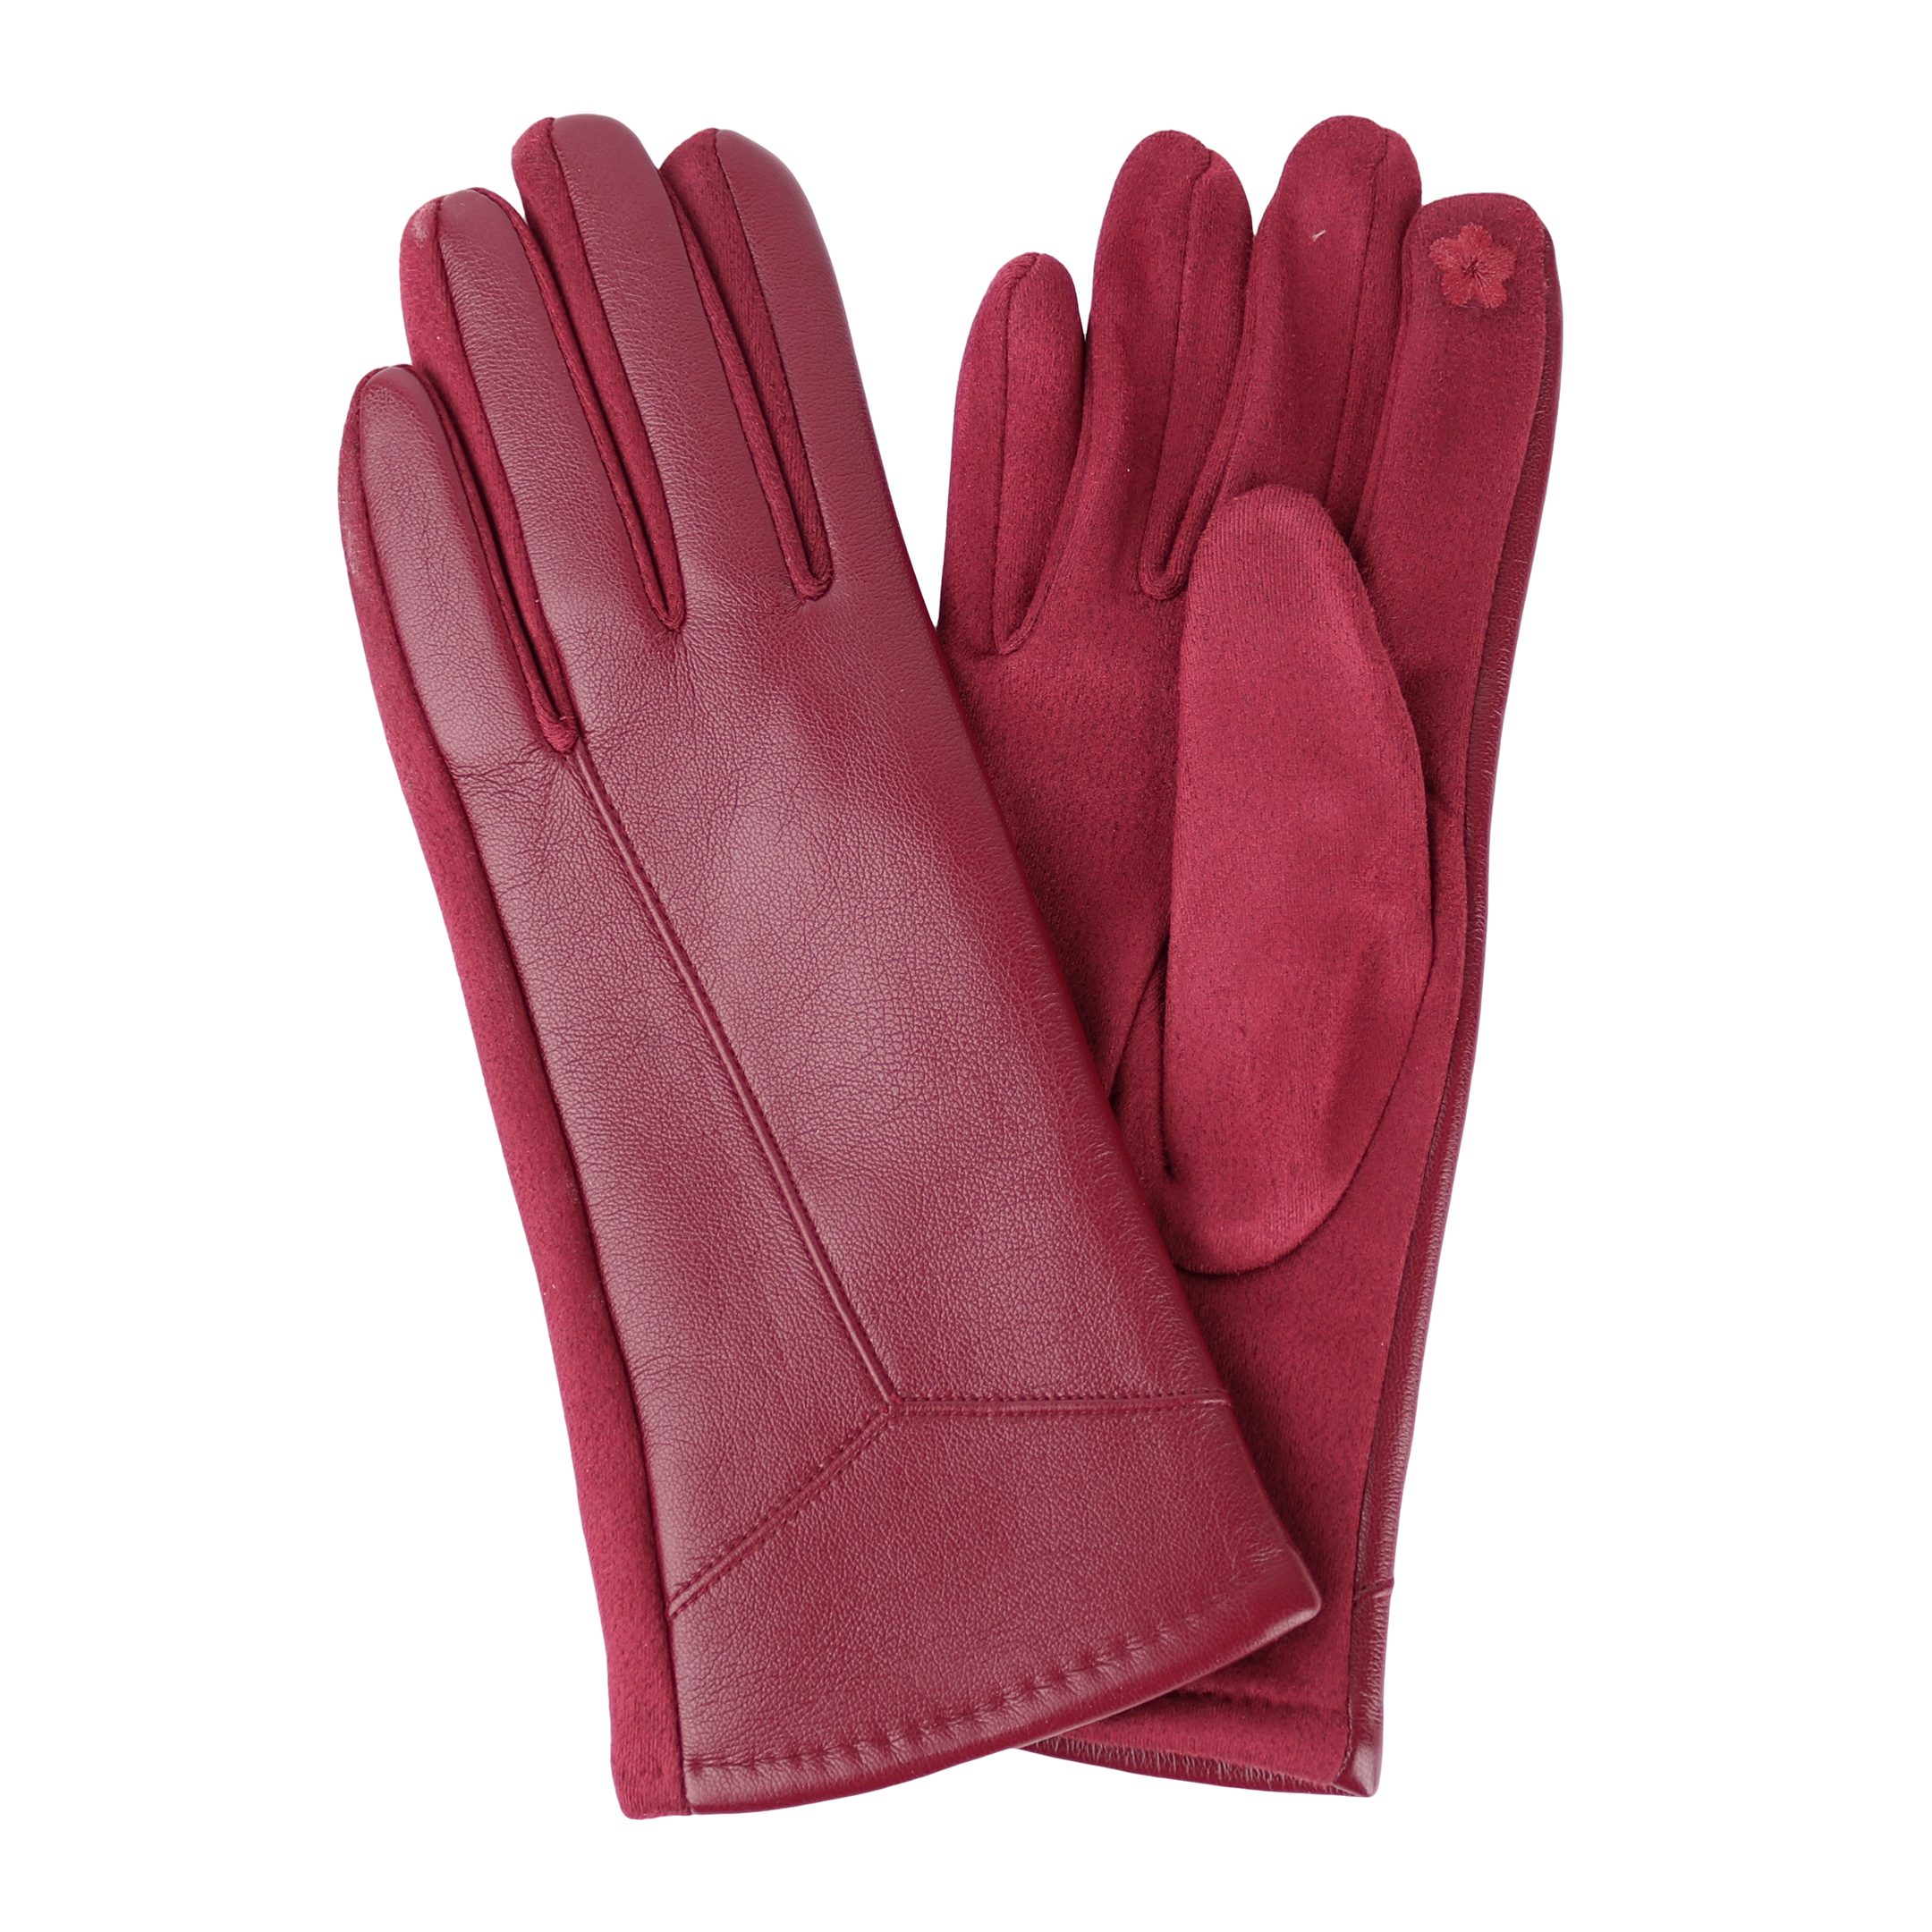 MIRROSI Lederhandschuhe Damen Touchscreen Handschuhe gefüttert Warm ONESIZE aus Veganleder sehr weich und warm ideal für Herbst oder Winter Bordeaux